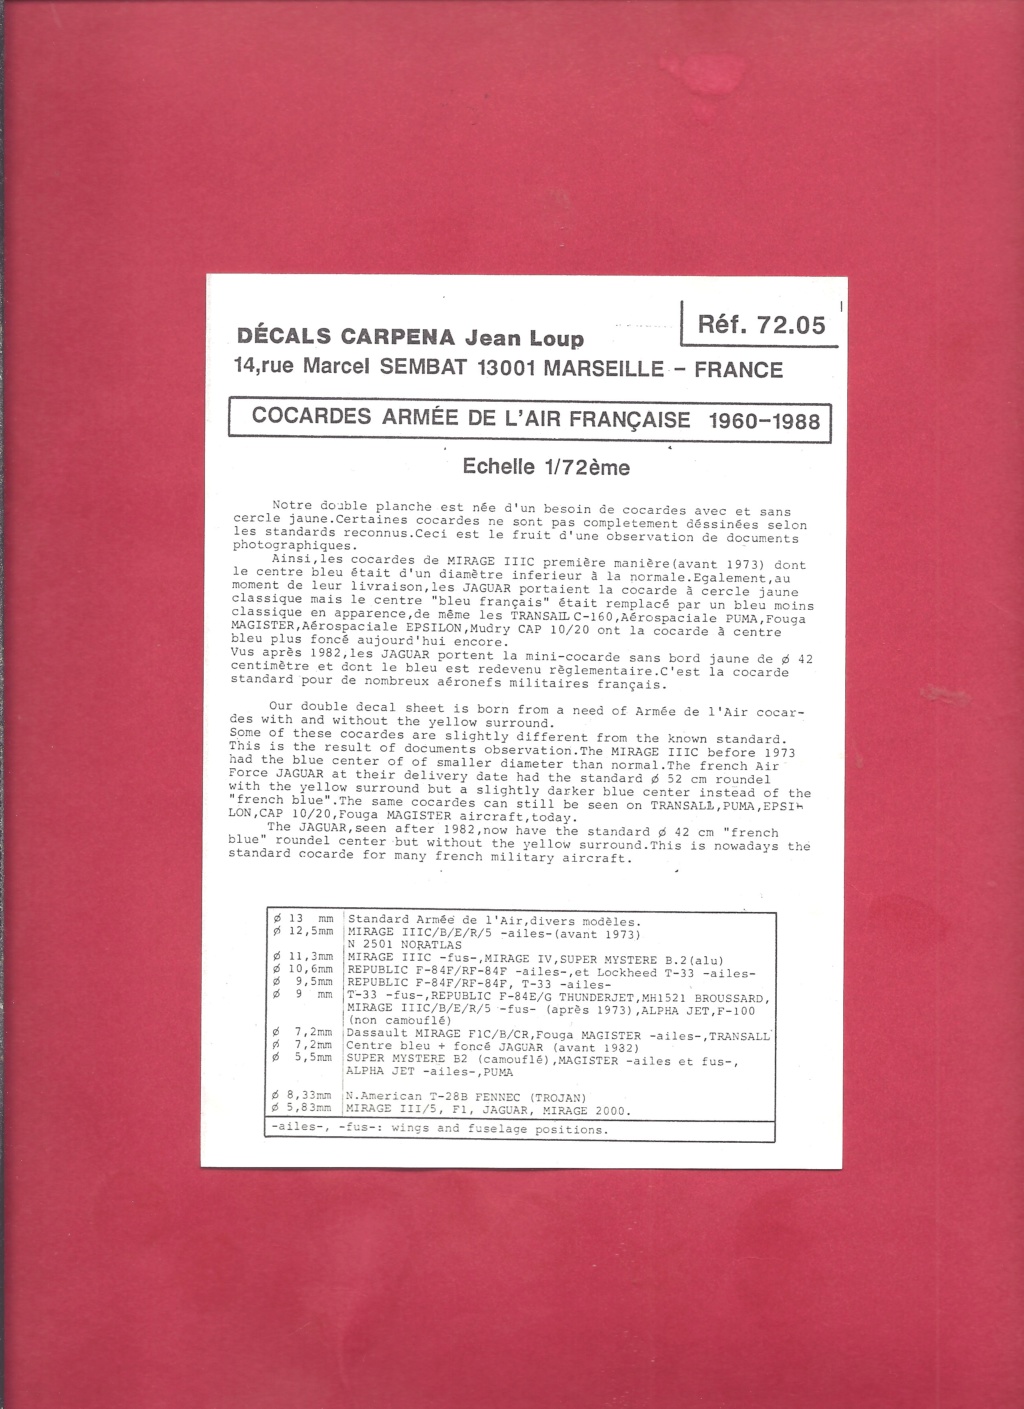 [CARPENA] Planche de décals Cocardes  Armée de l Air 1960-1988 1/72ème Réf 72.05  Carpen47